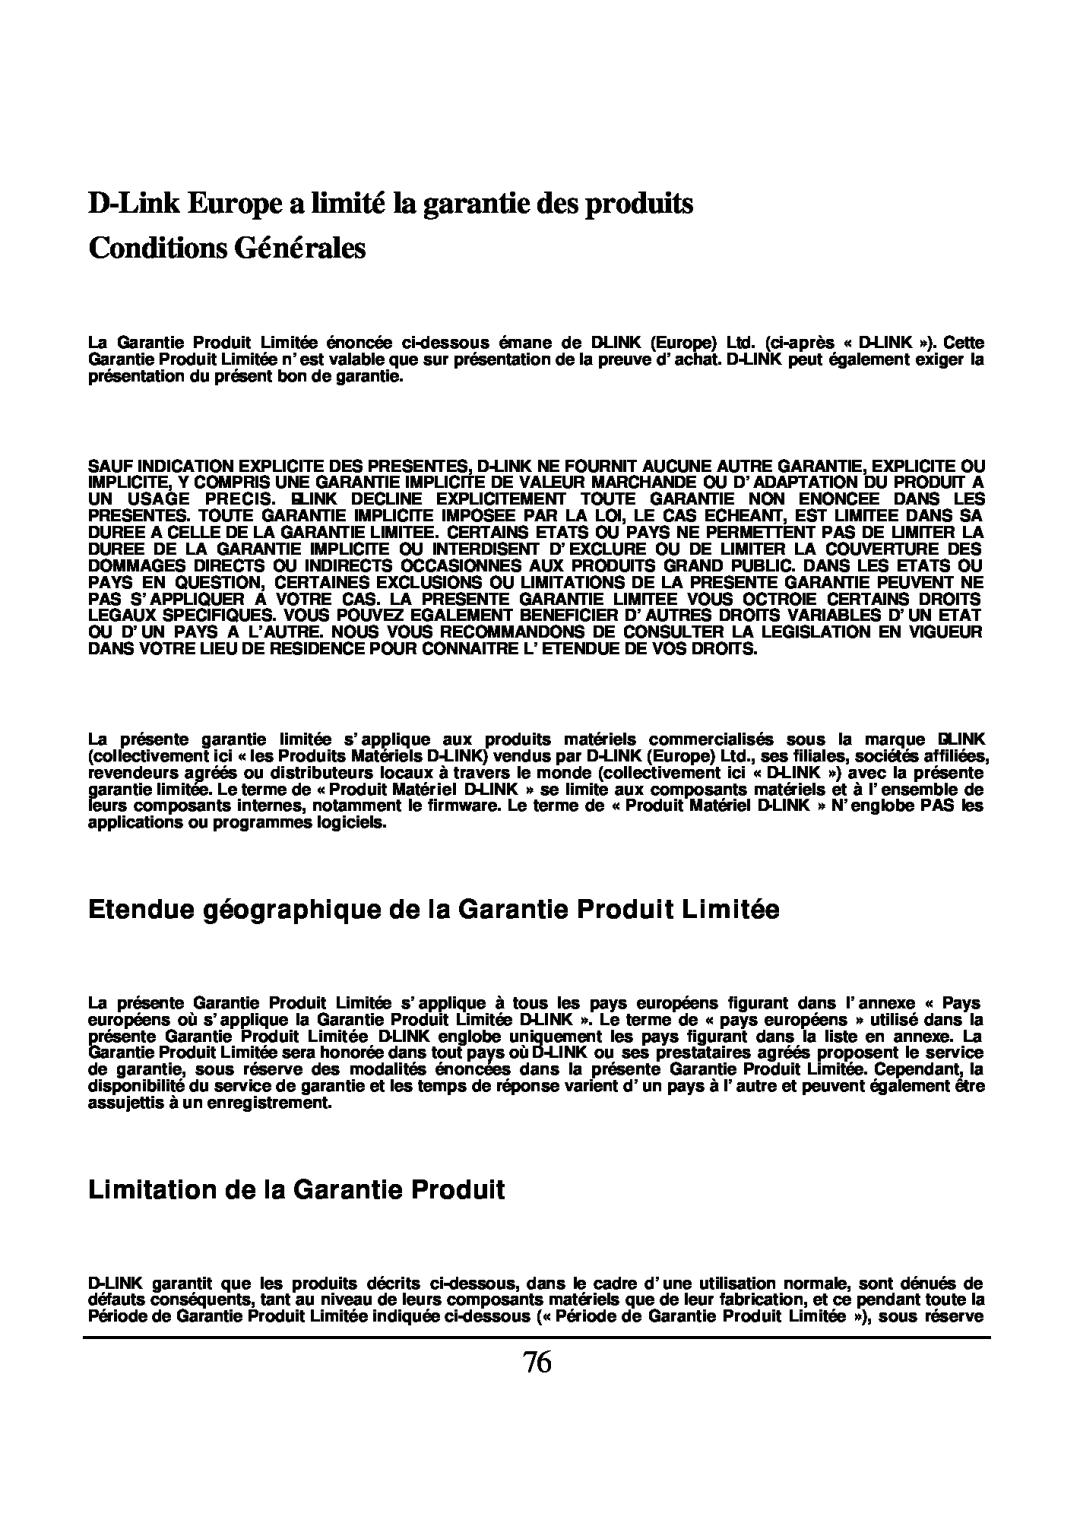 D-Link DES-1526 D-LinkEurope a limité la garantie des produits, Conditions Générales, Limitation de la Garantie Produit 